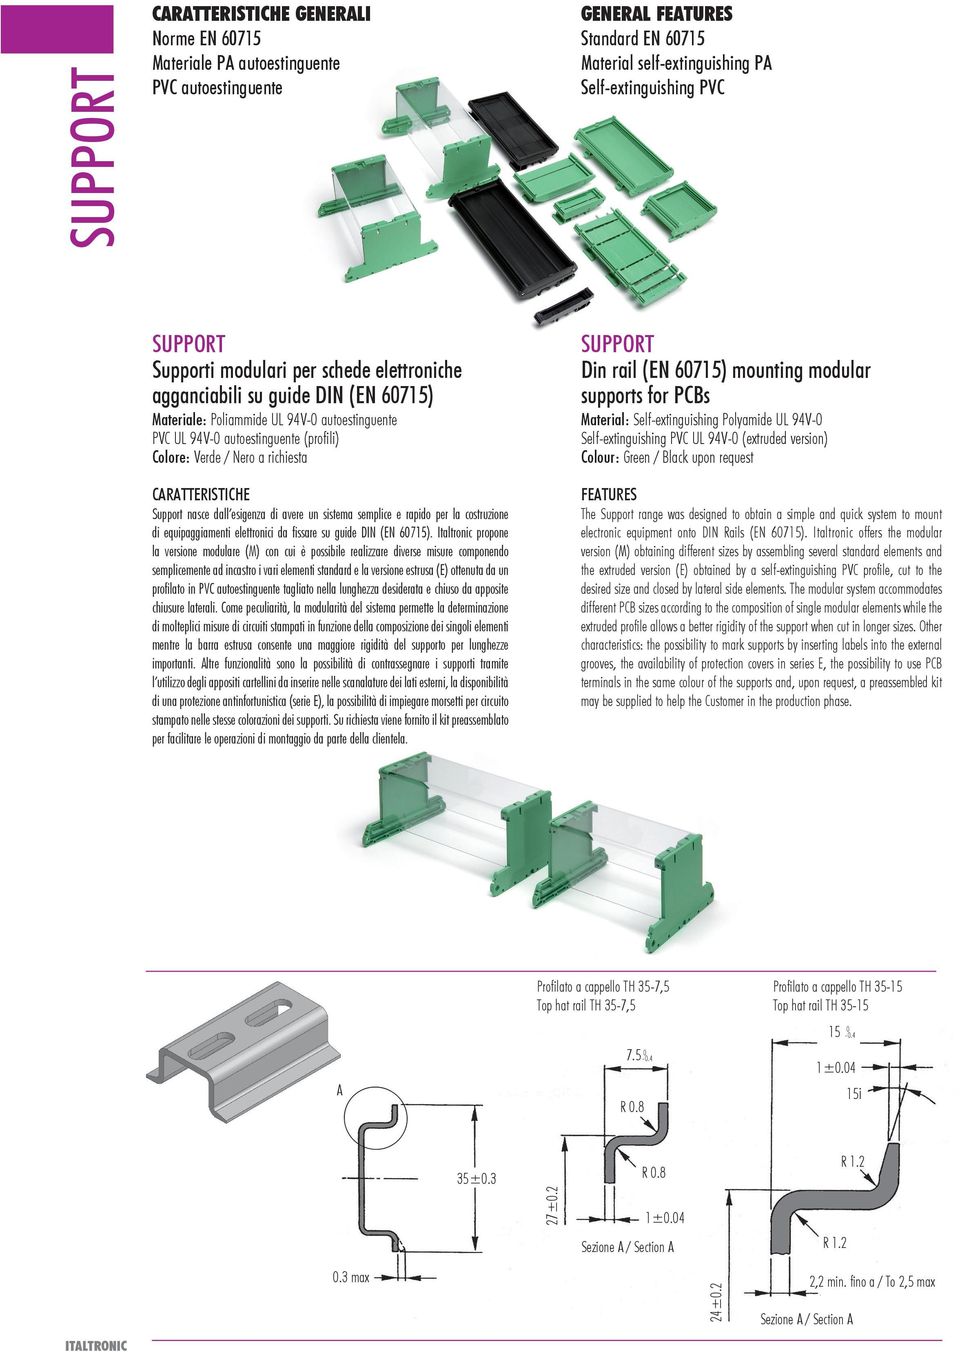 semplice e rapido per la costruzione di equipaggiamenti elettronici da fissare su guide DIN (EN 07).